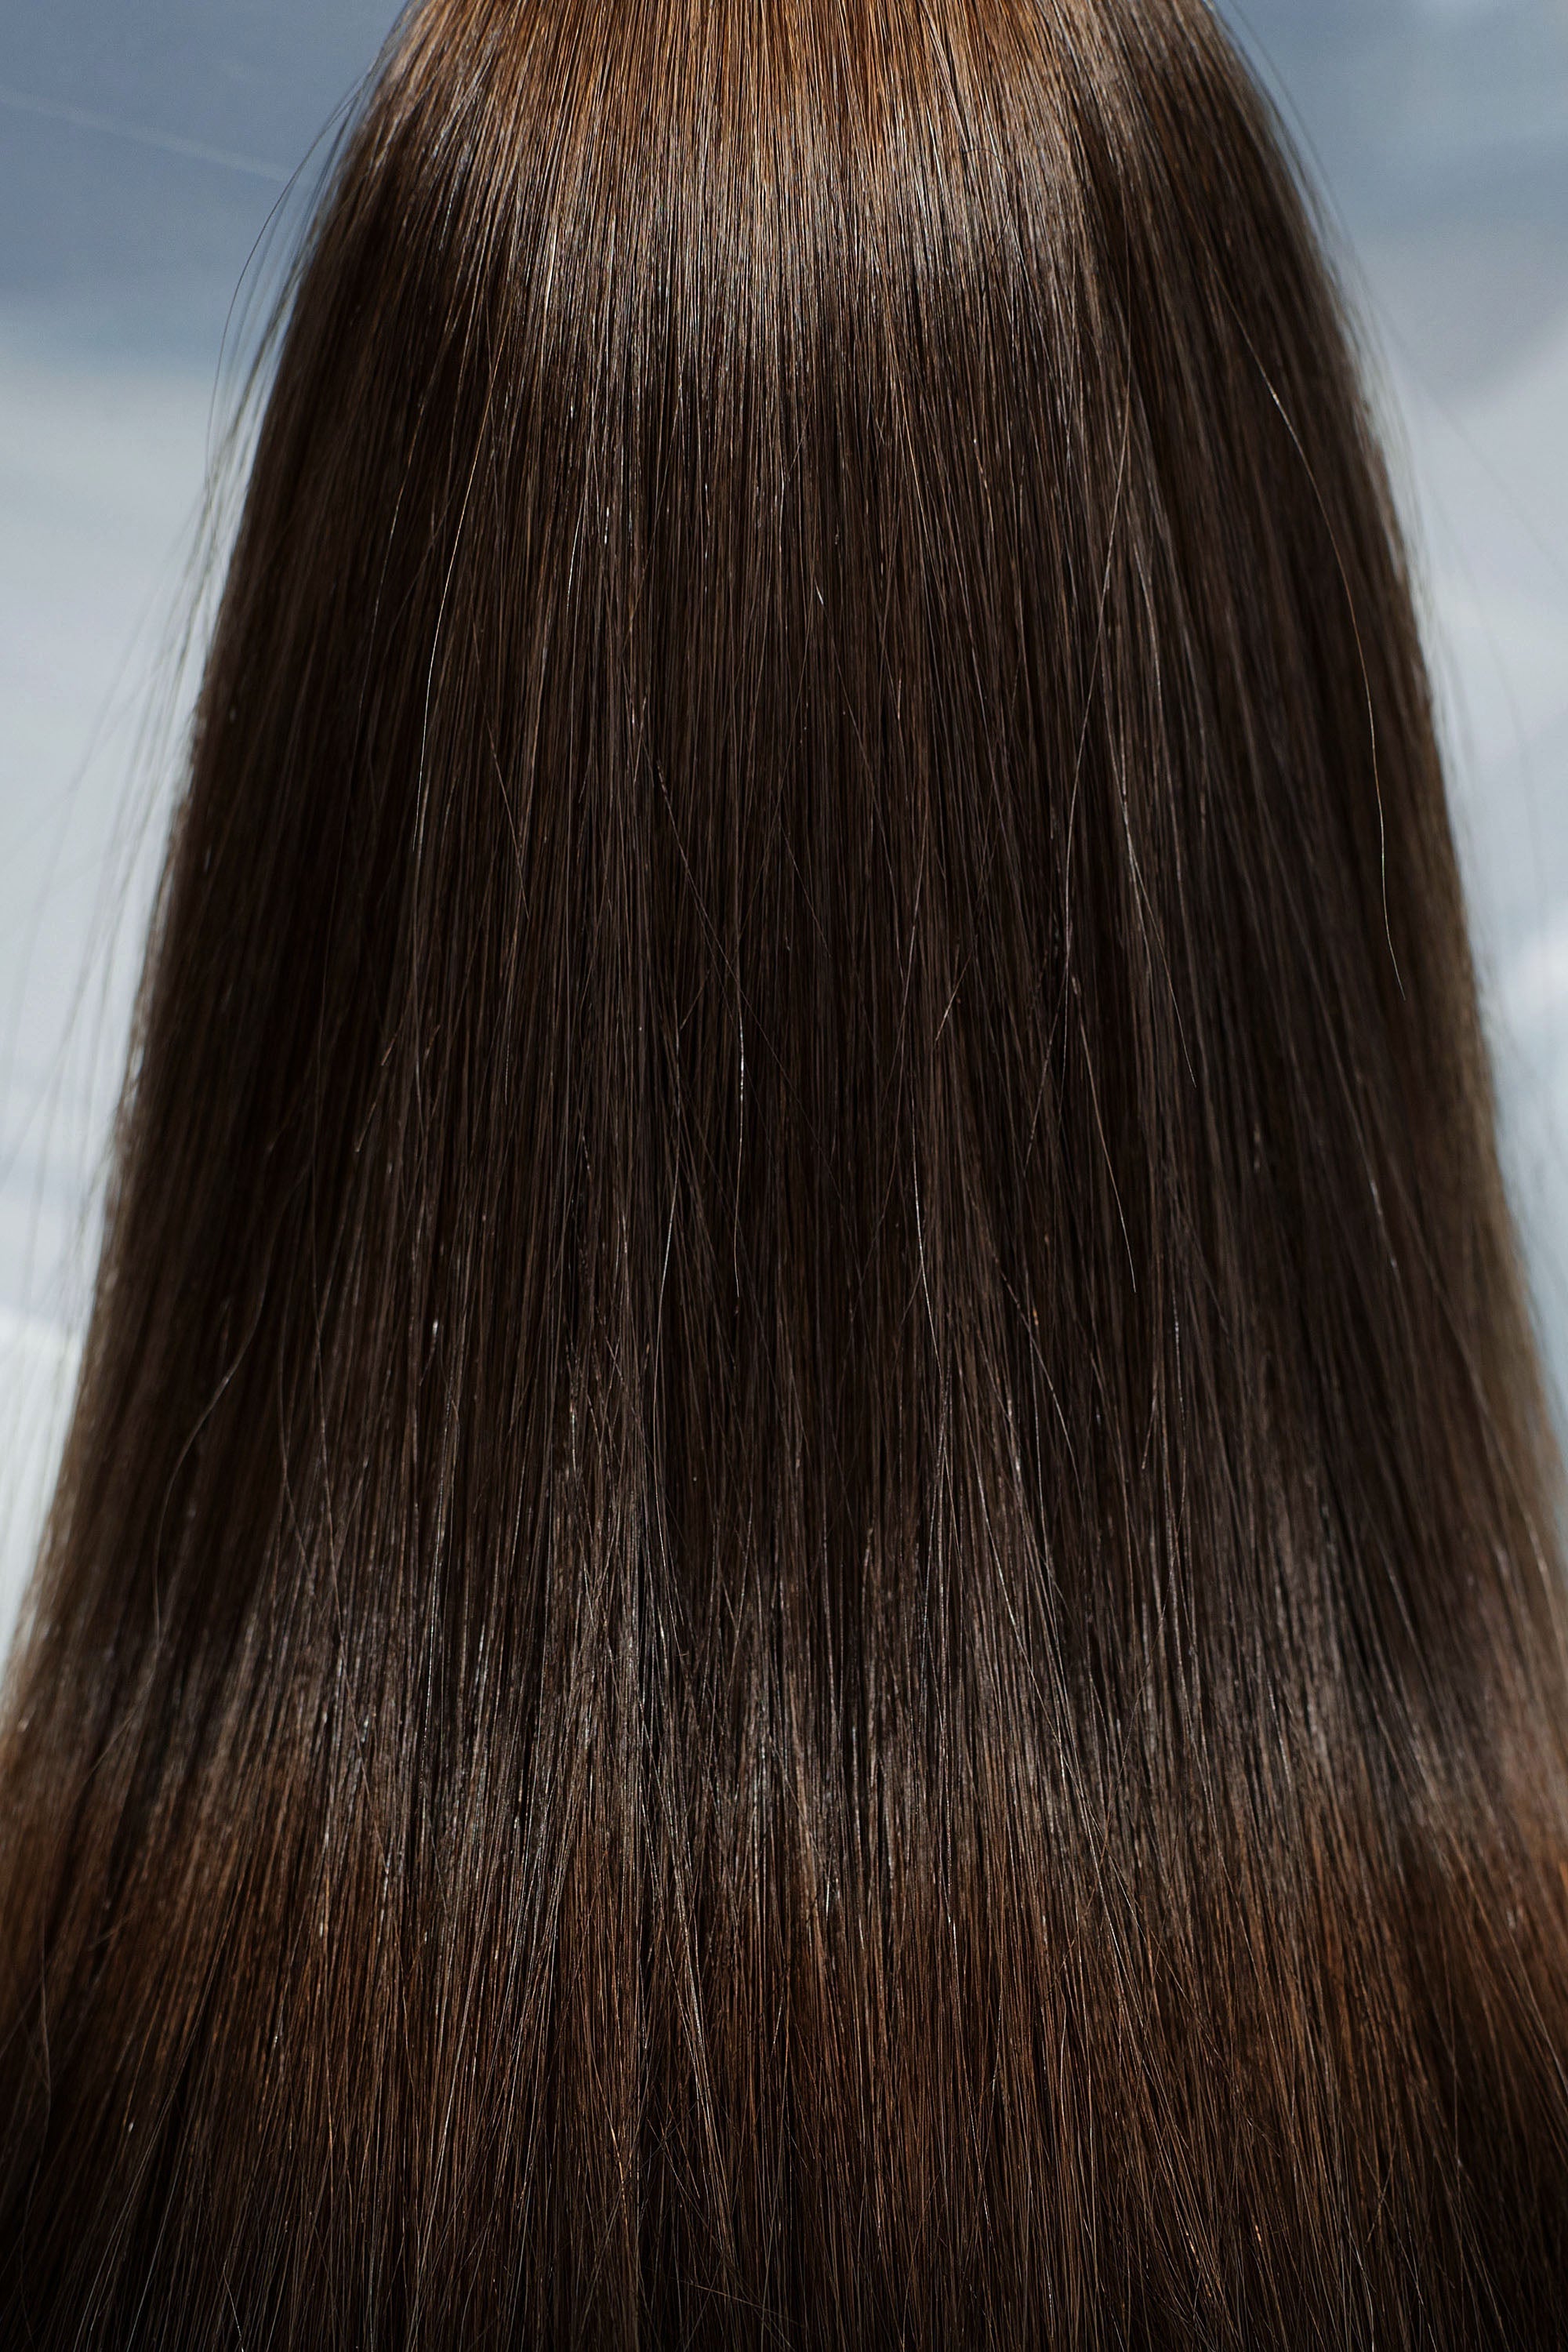 Behair professional Bulk hair "Premium" 24" (60cm) Natural Straight Light Brown #4 - 25g hair extensions